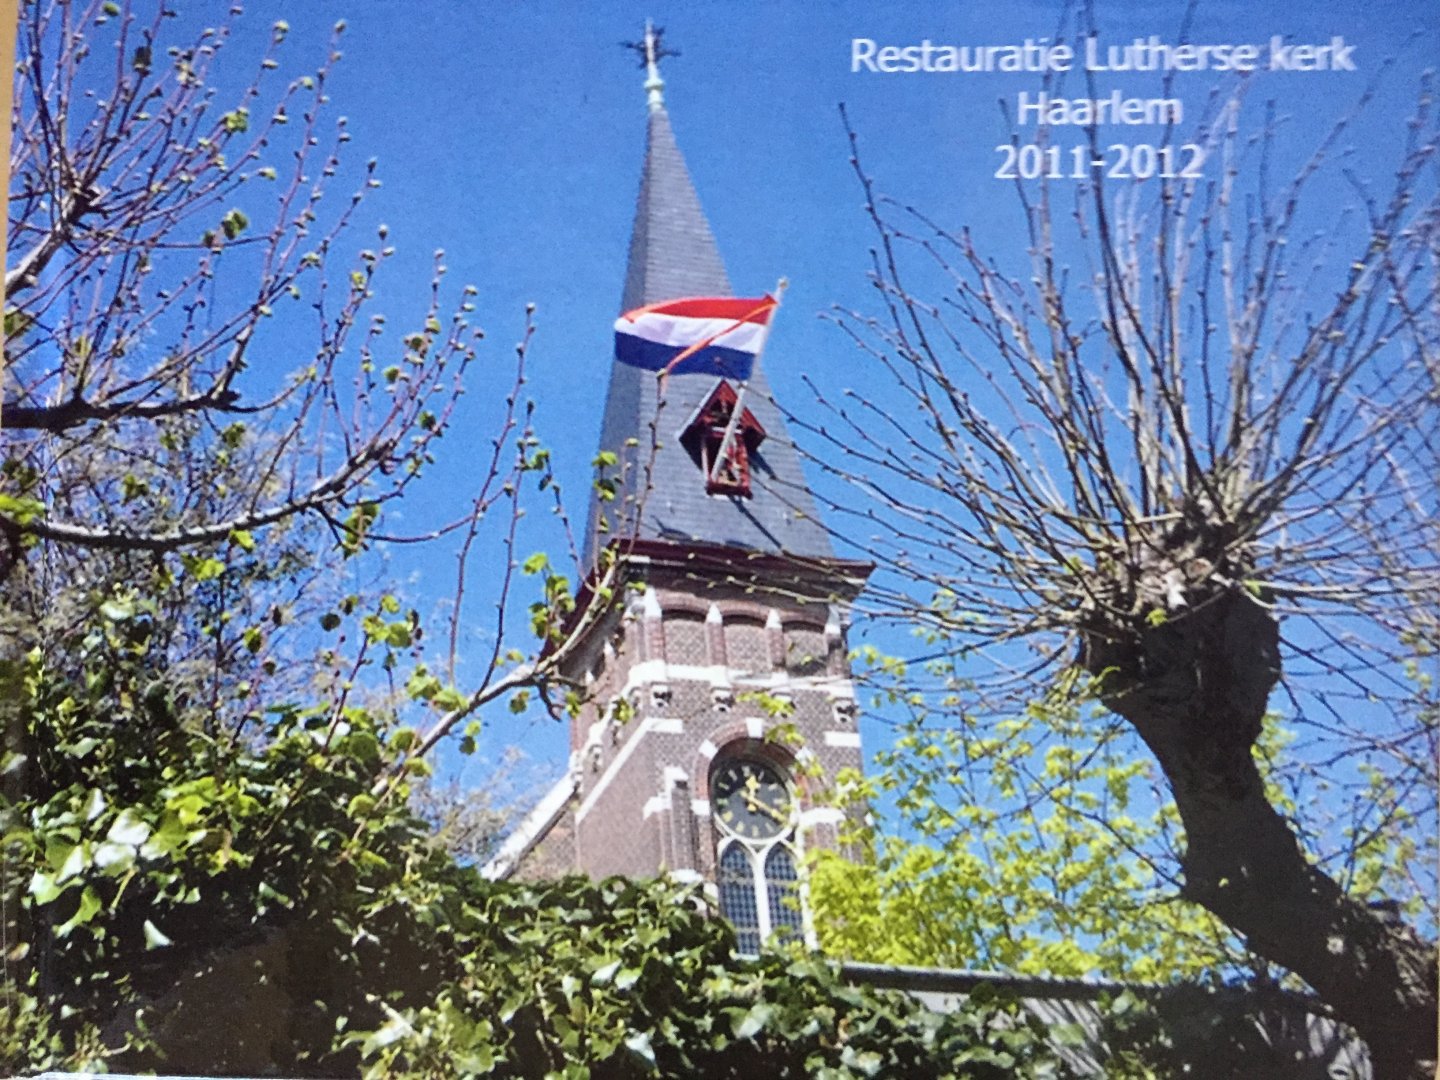  - Restauratie Lutherse kerk Haarlem 2011-2012